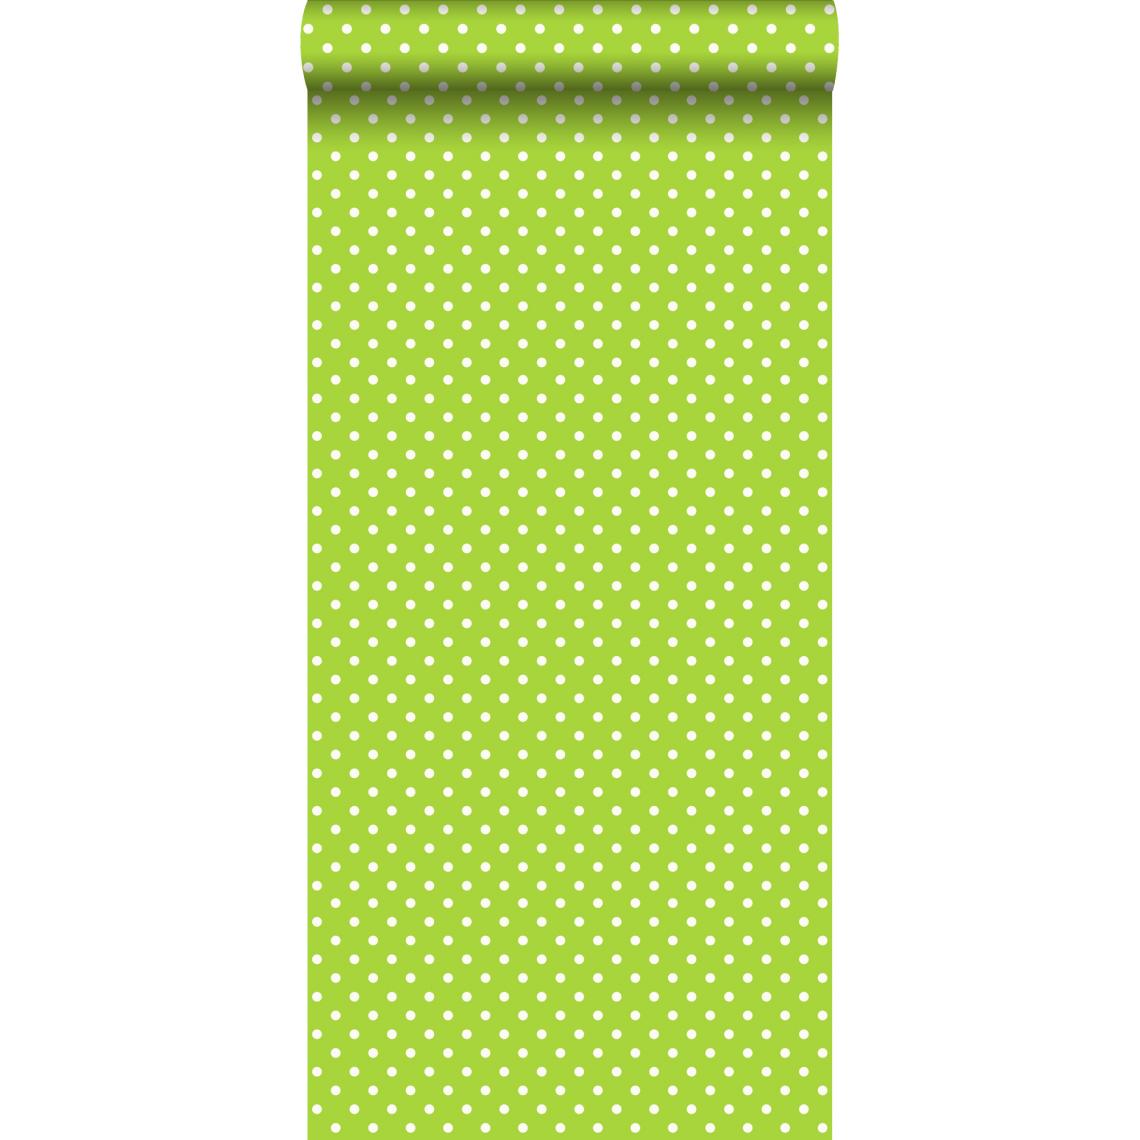 ESTAhome - ESTAhome papier peint à motif de petits points vert citron - 115743 - 53 cm x 10,05 m - Papier peint